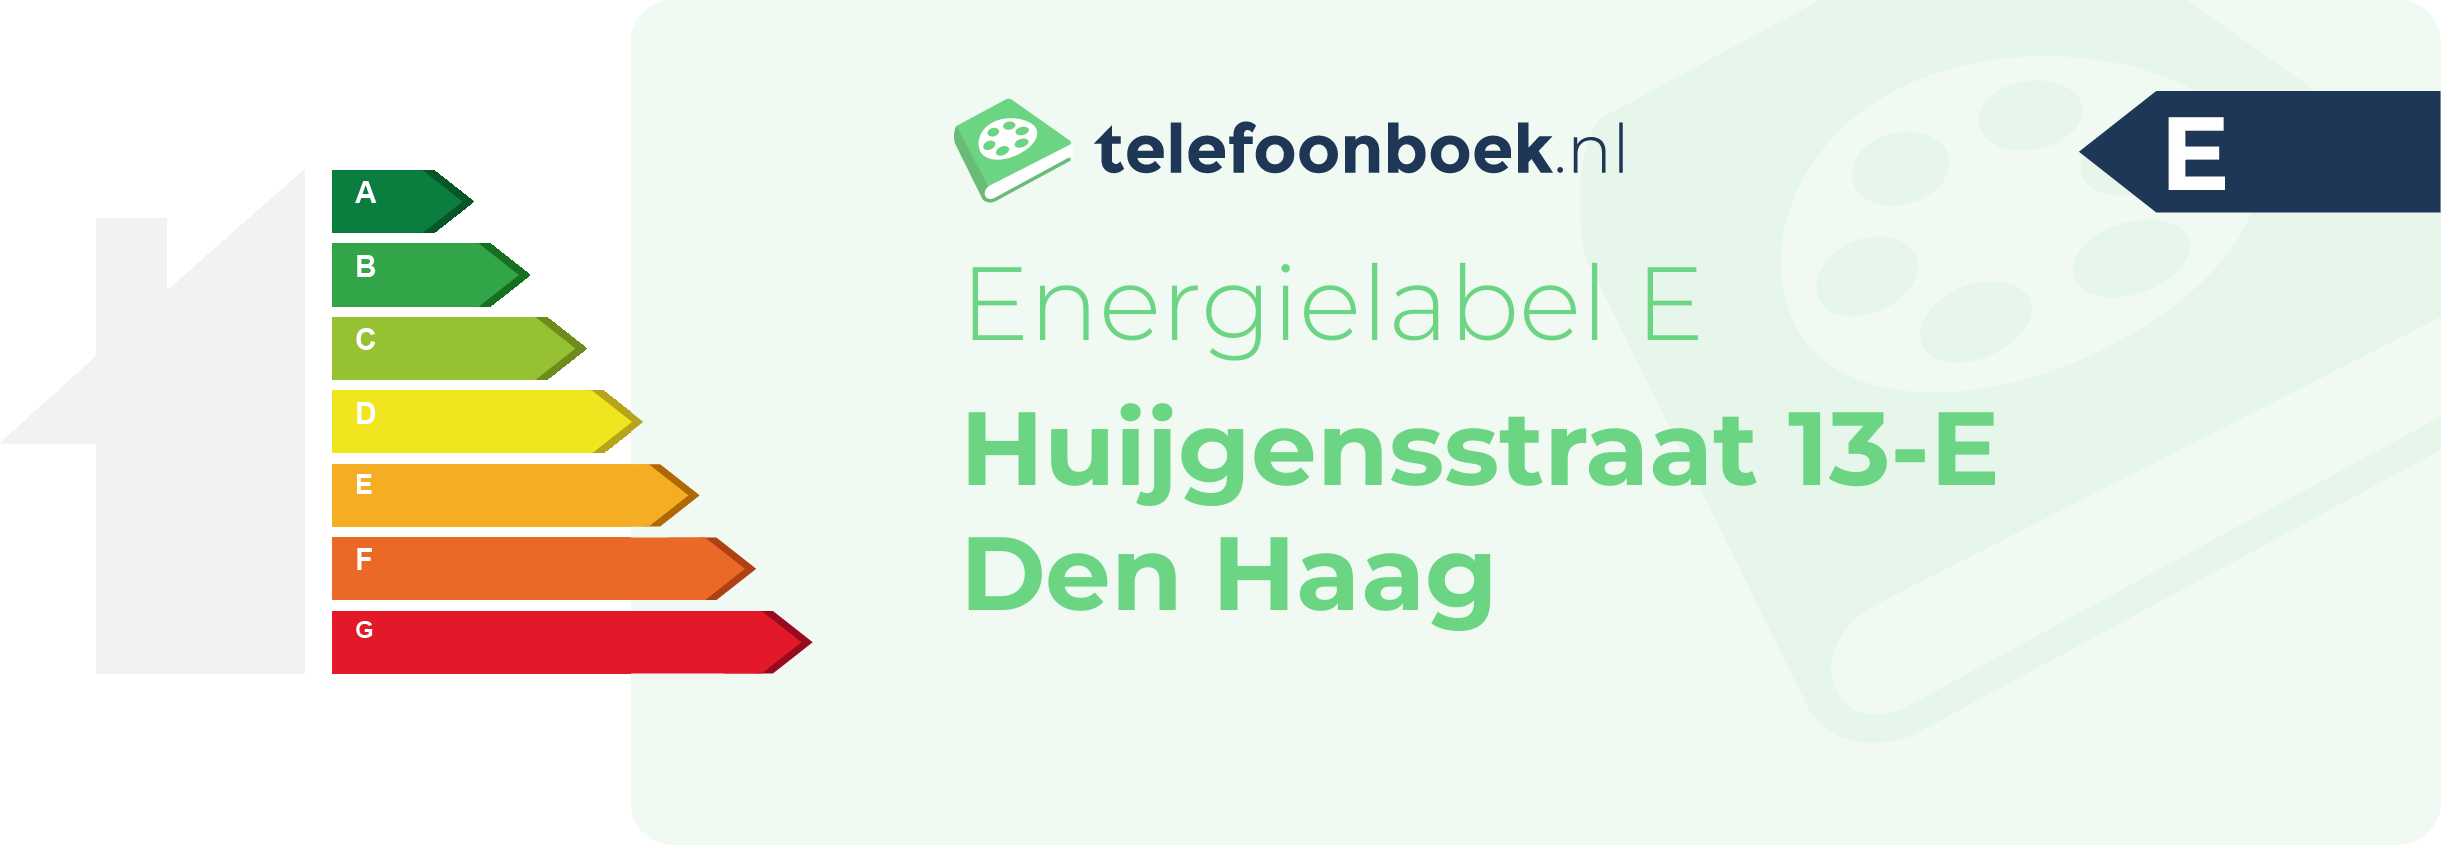 Energielabel Huijgensstraat 13-E Den Haag